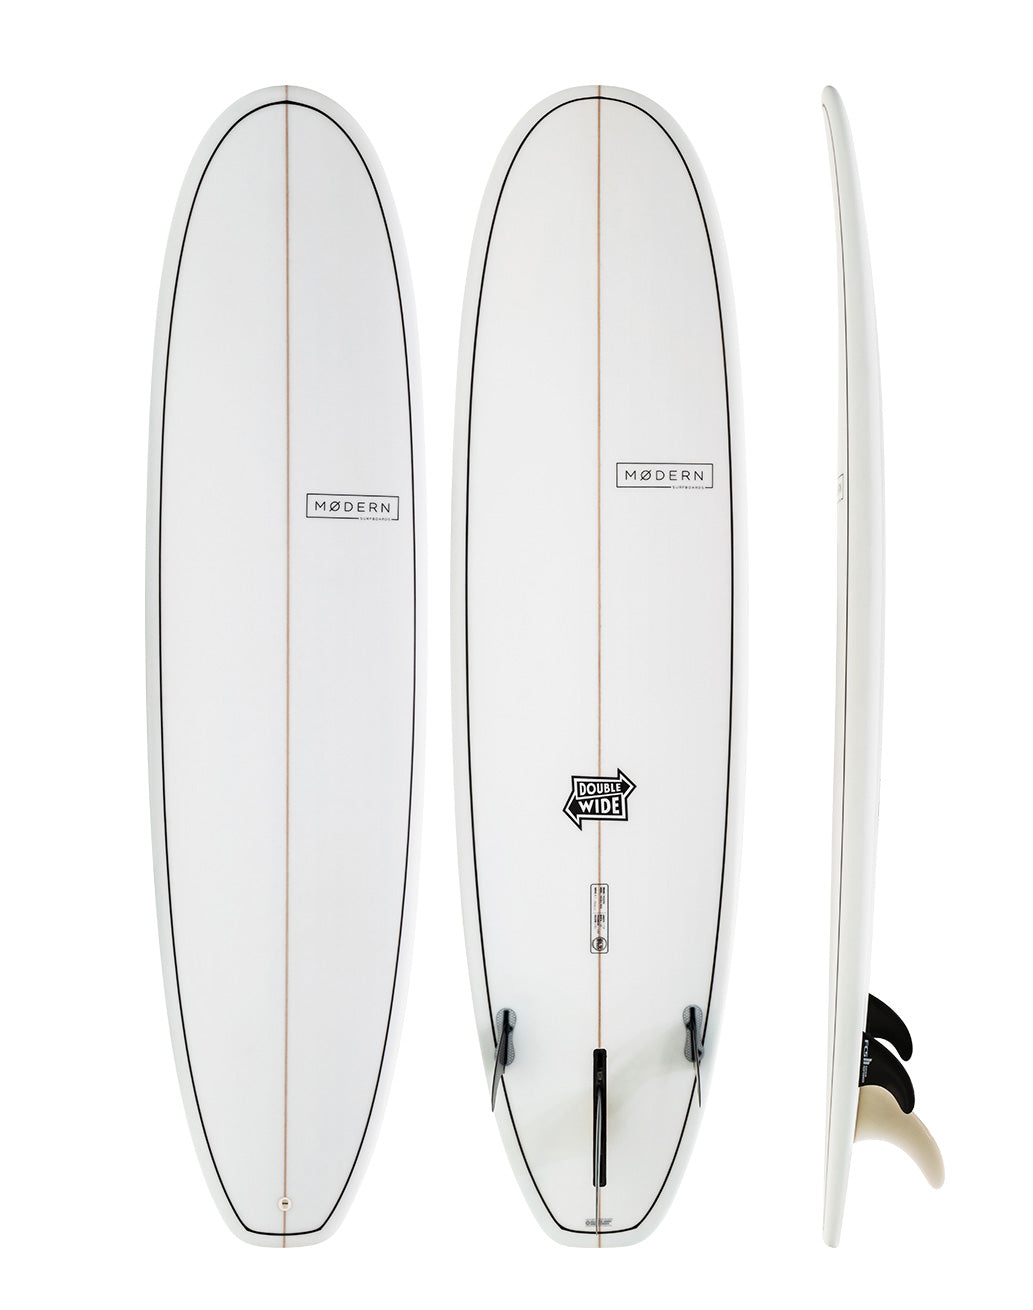 Modern Surfboards - Double Wide white surfboard